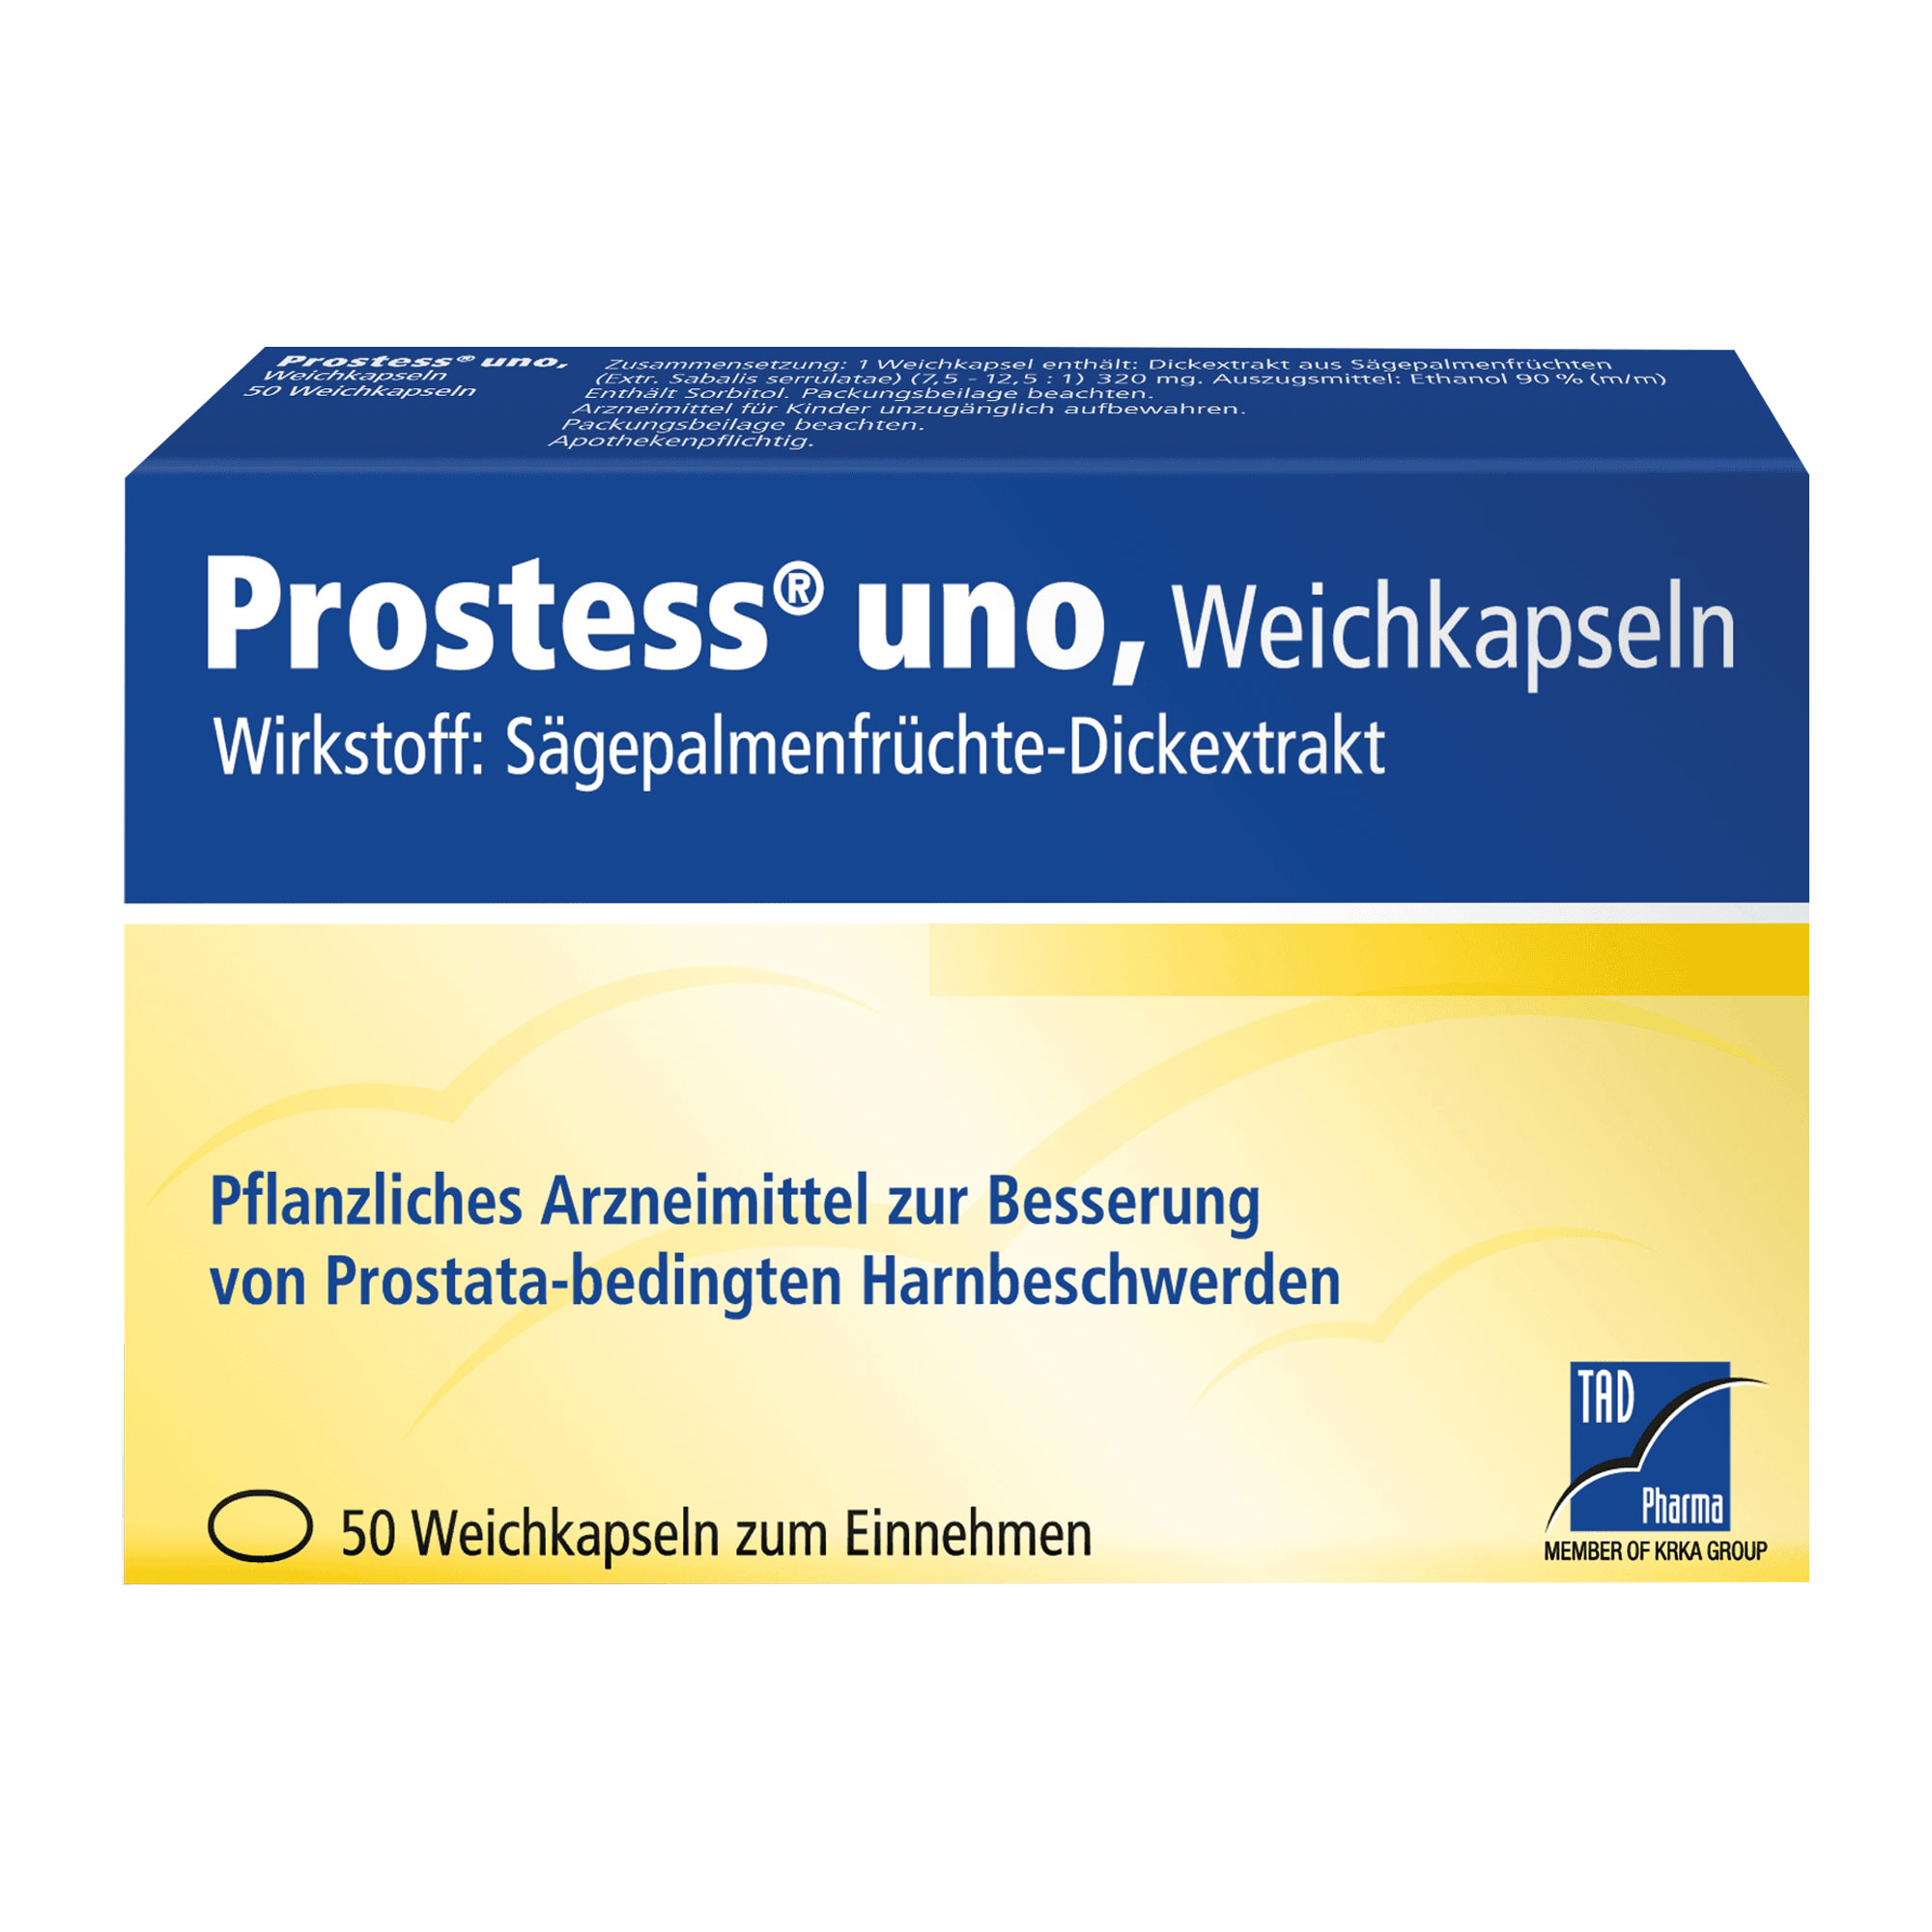 Prostess uno ist ein pflanzliches Arzneimittel zur Besserung von Prostata-bedingten Harnbeschwerden.